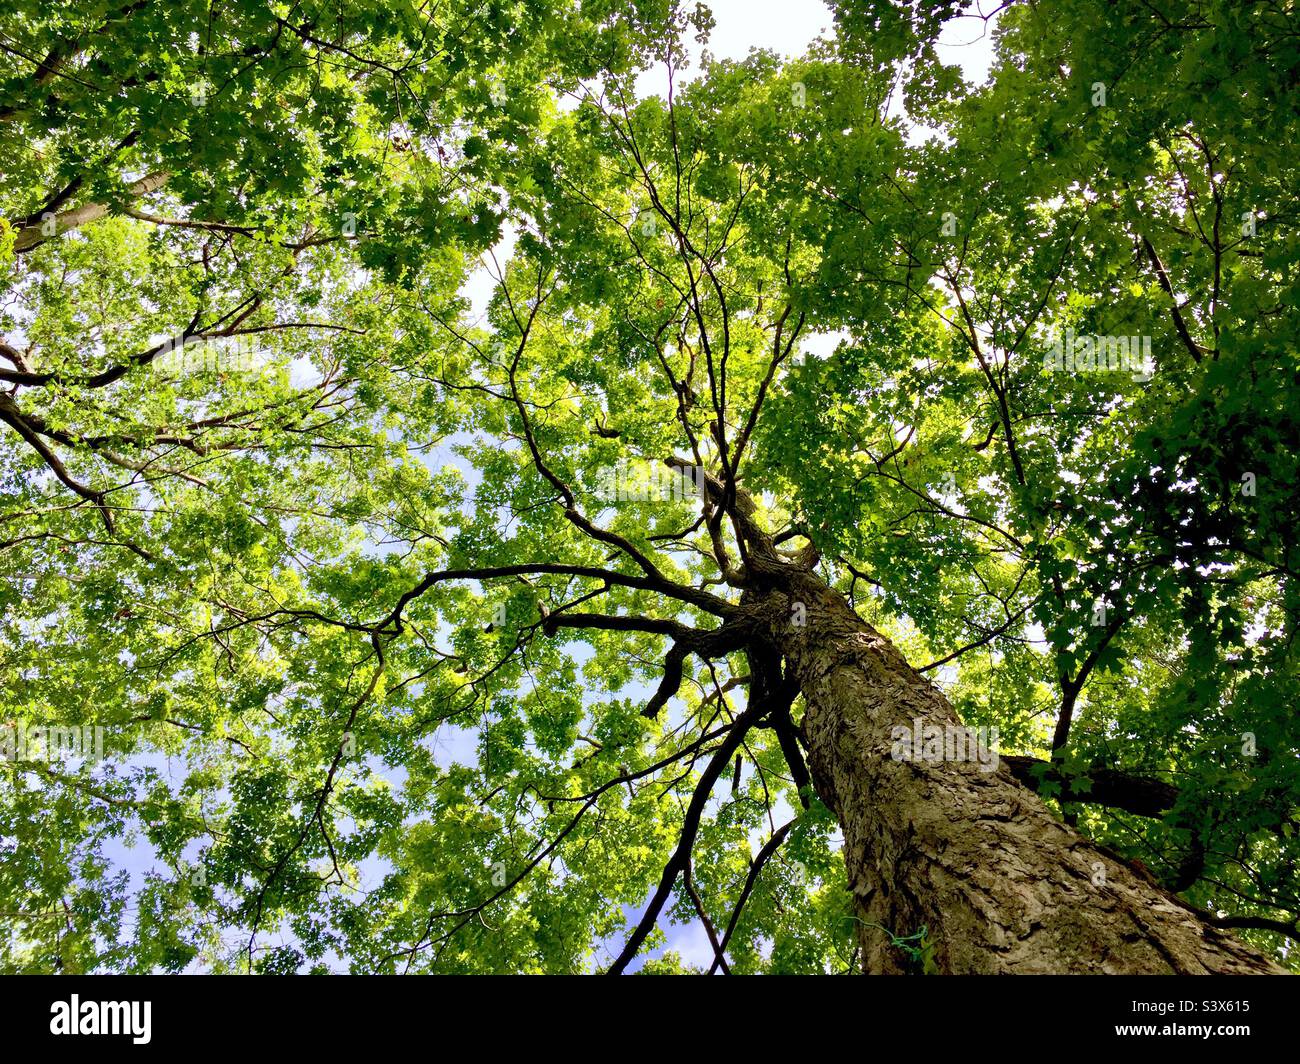 In die Baumkronen alter Bäume, Ontario. Überall grüne Blätter. Blauer Himmel. Blattwerk. Wald. Ruhige Lebendigkeit. Stockfoto